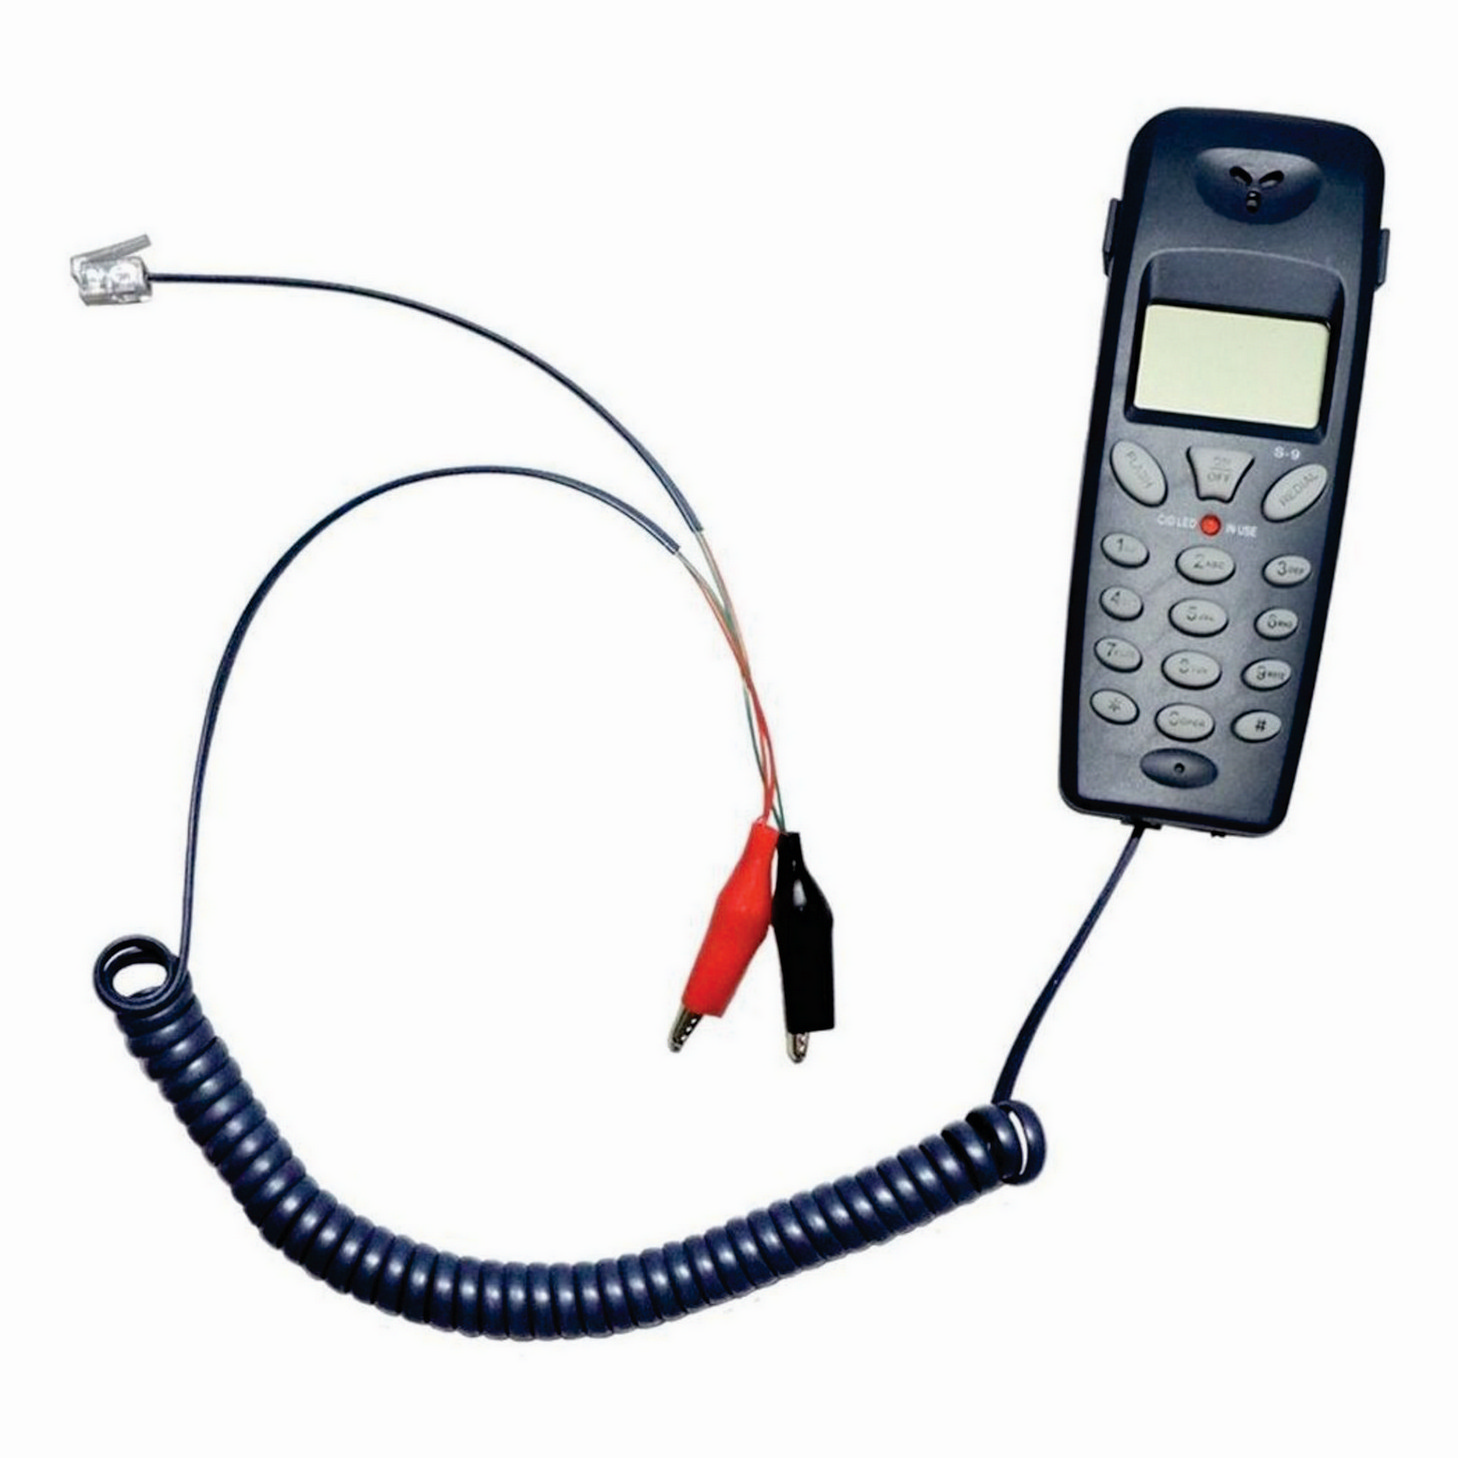 Telefone Badisco Digital C/ Identificador De Chamadas LCD Teste de Linha